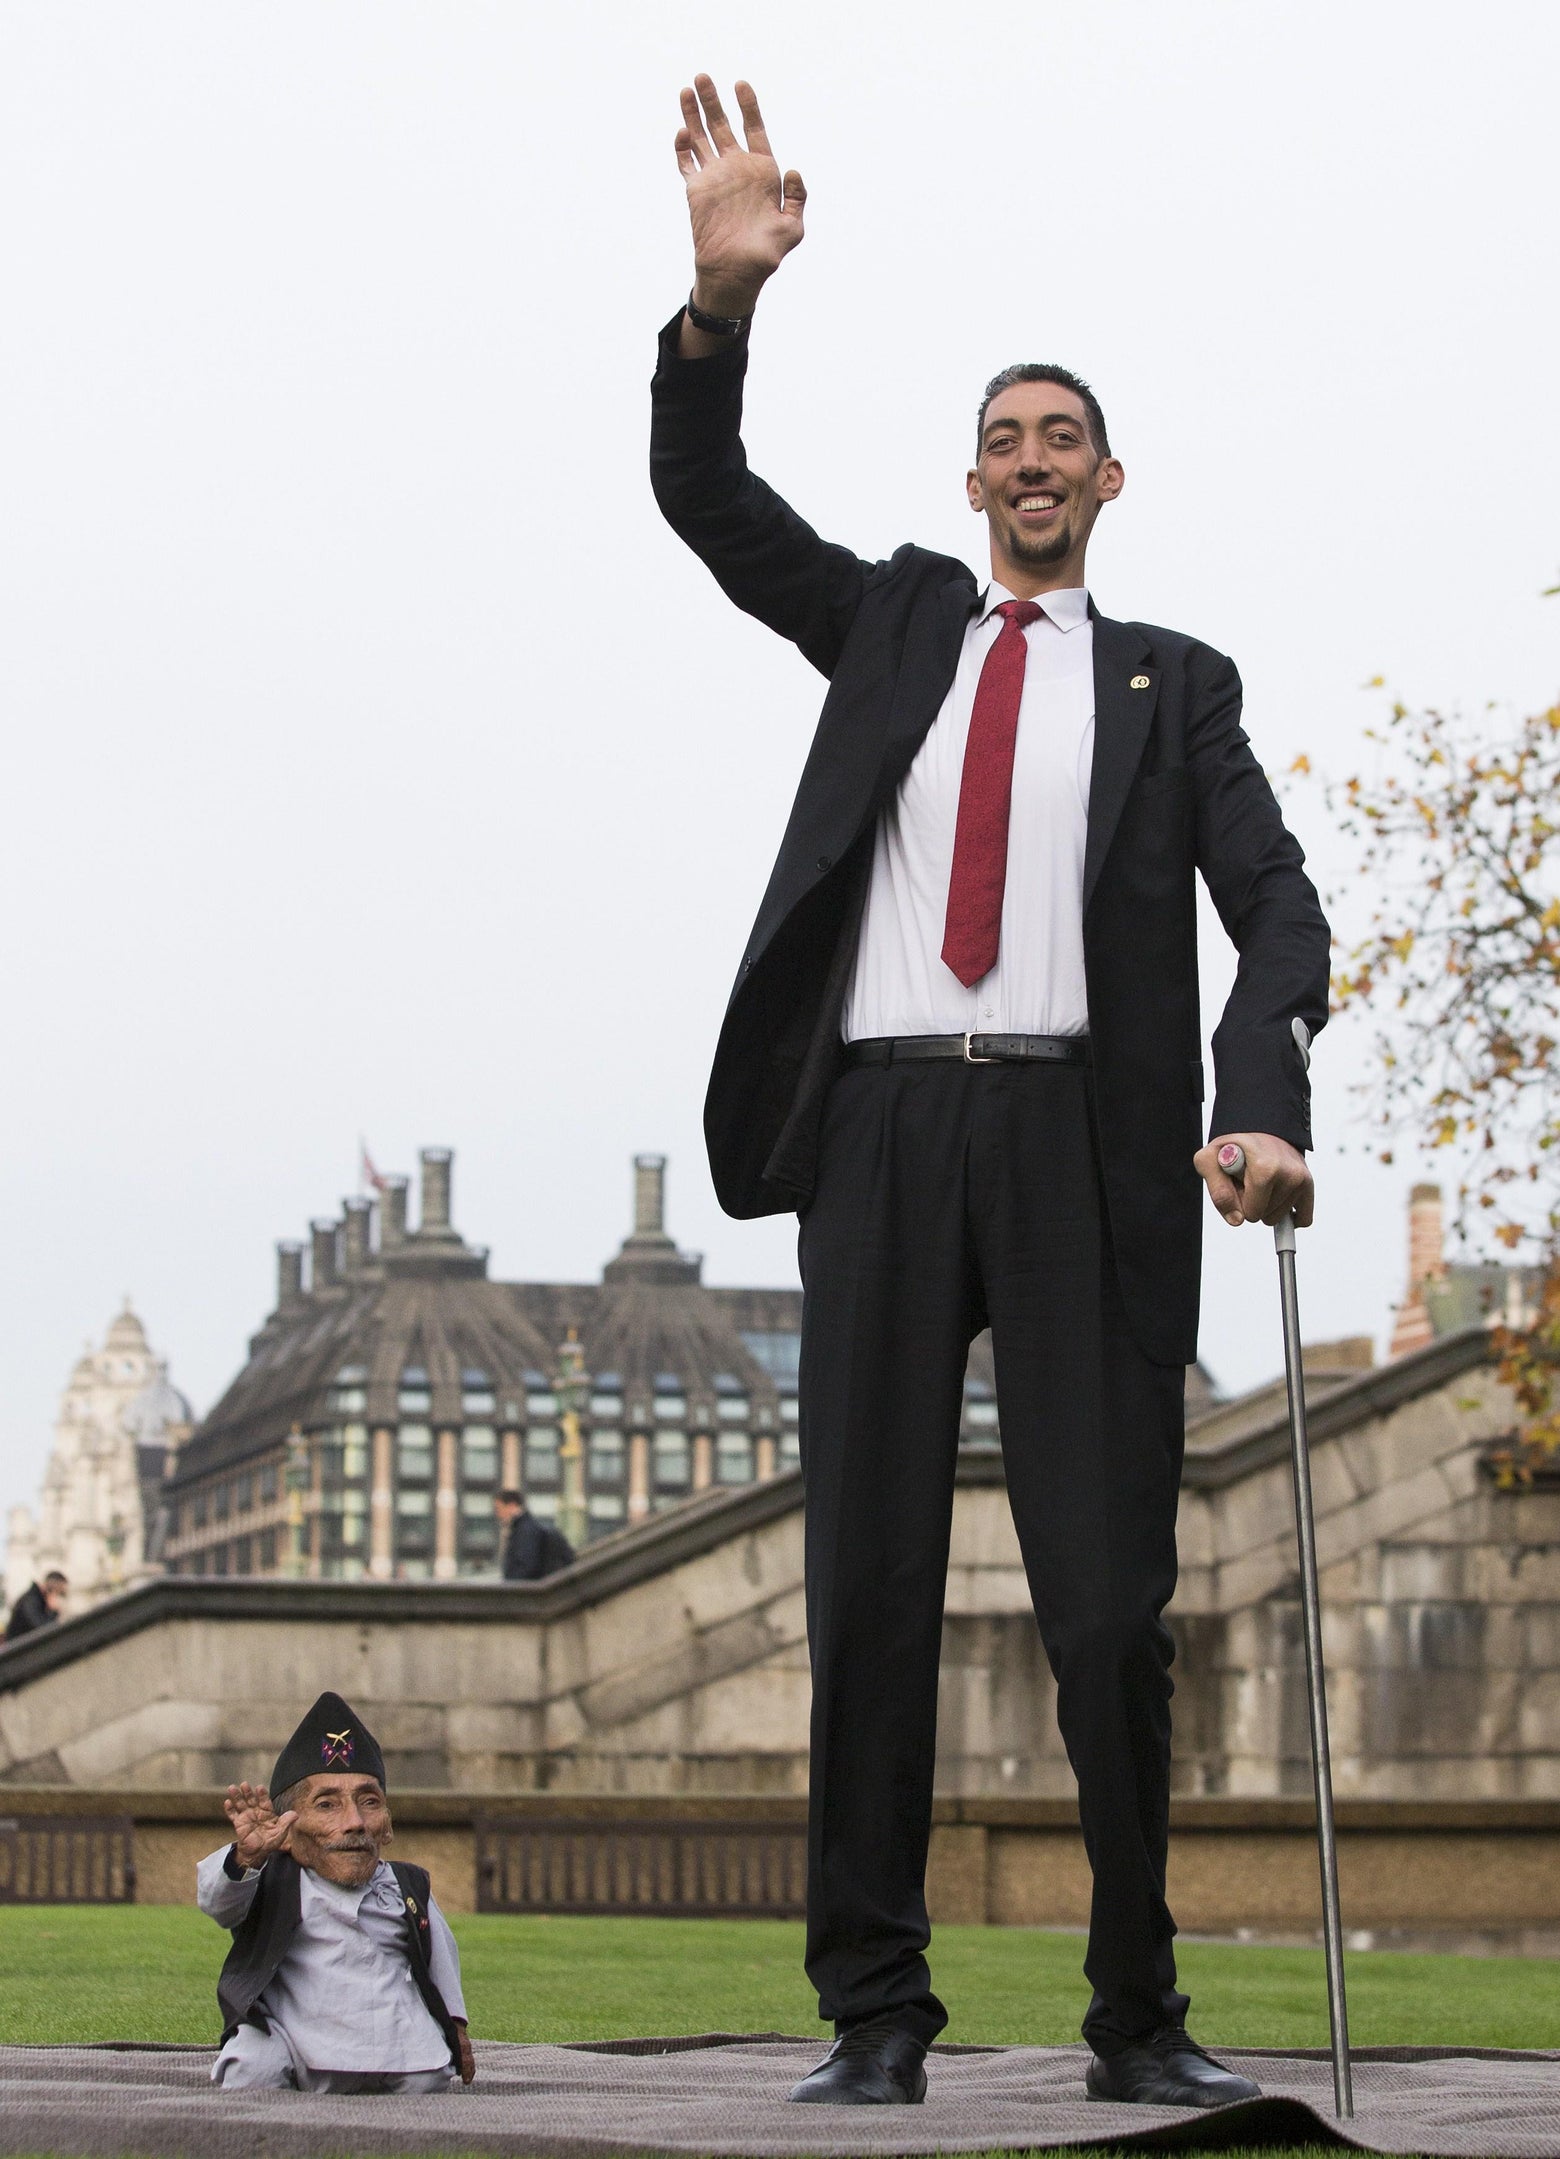 World's tallest man meets world's shortest man